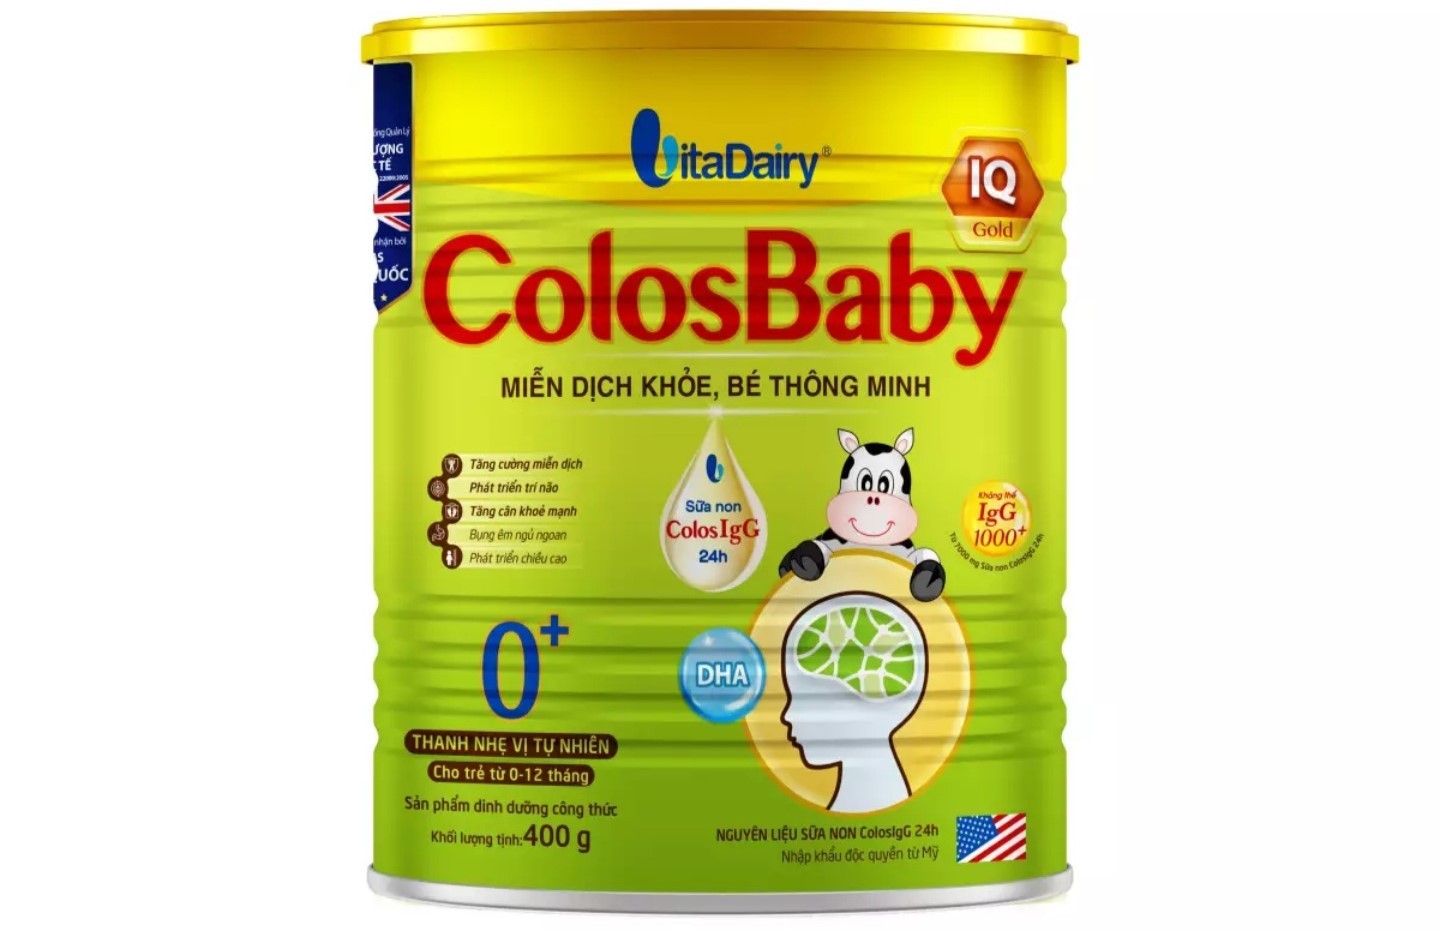 ColosBaby IQ Gold là sản phẩm thuộc thương hiệu VitaDairy